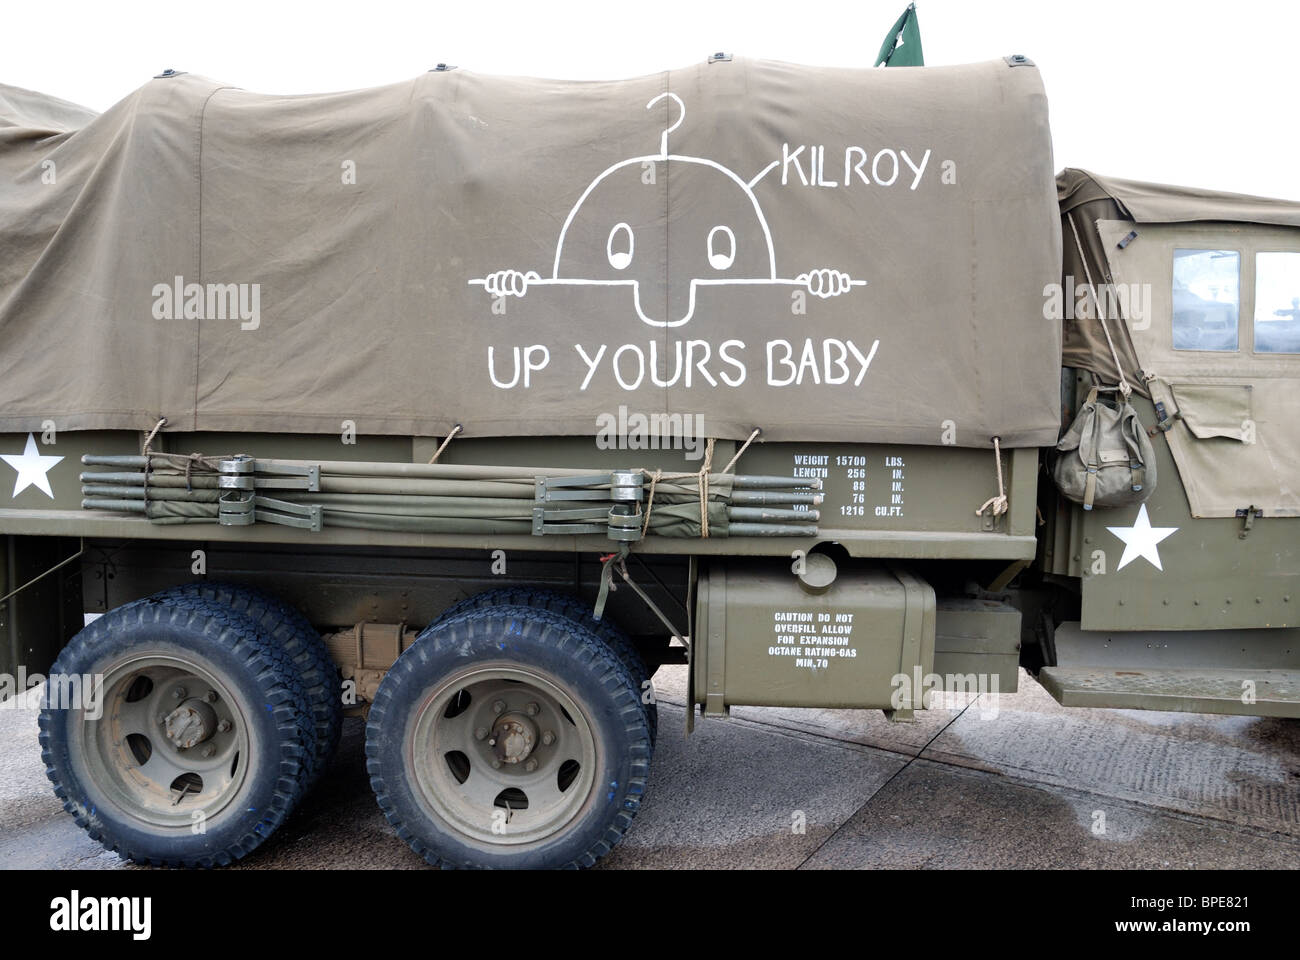 Noi camion militare con Killroy graffiti Foto Stock